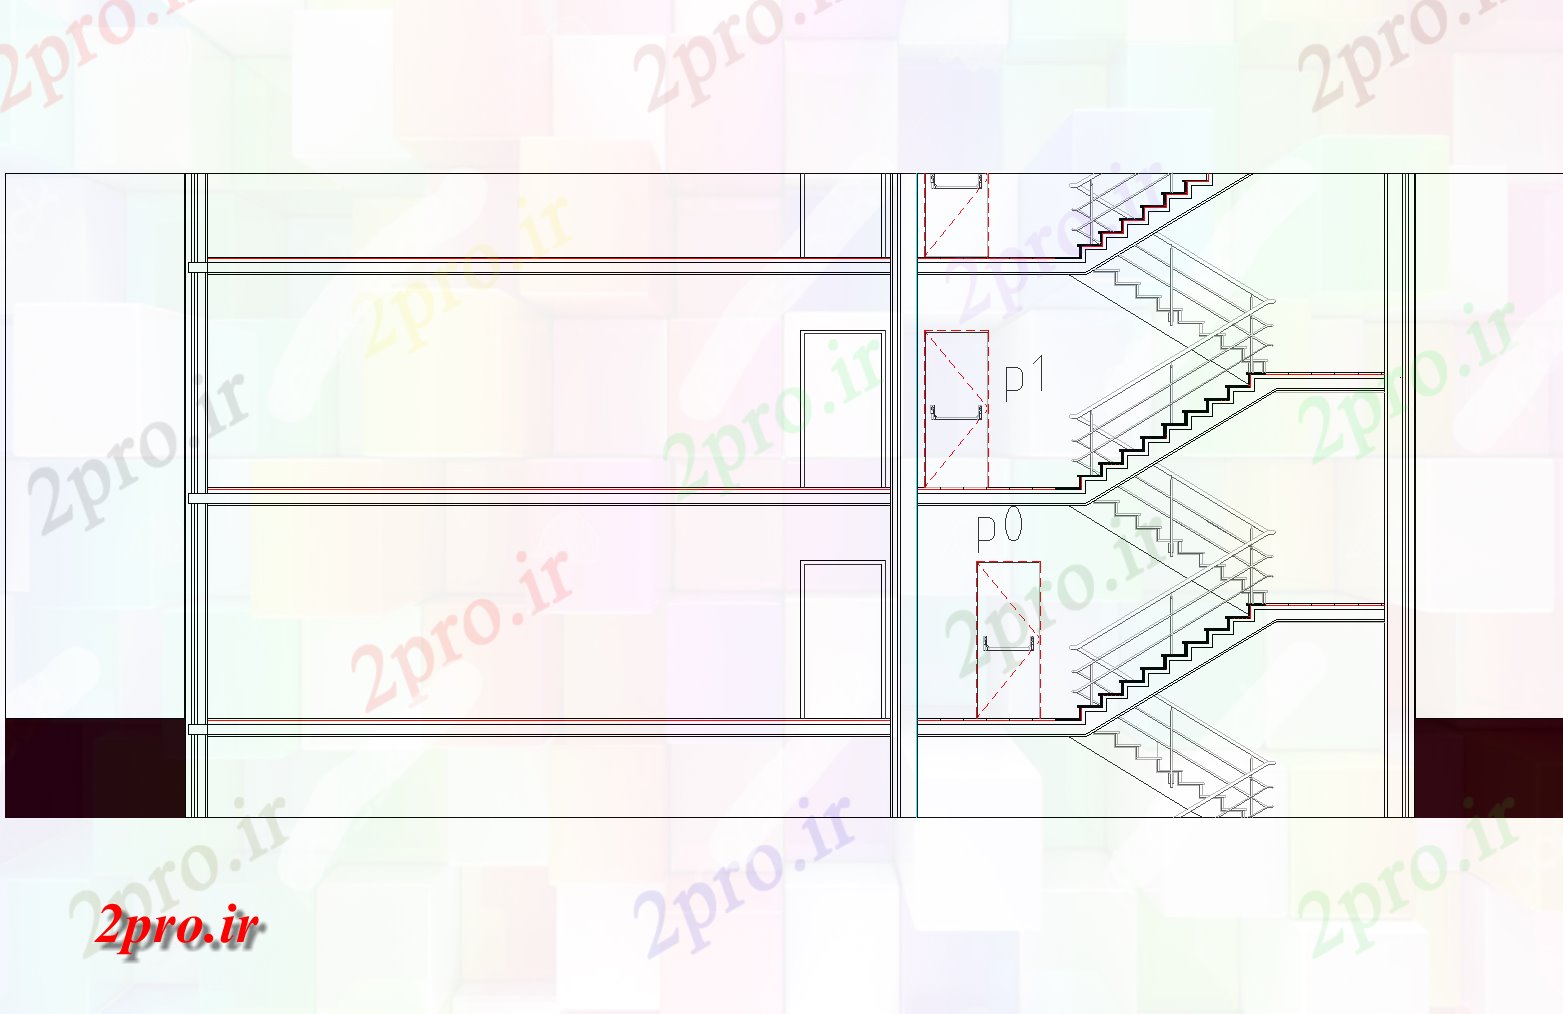 دانلود نقشه معماری معروف لوله از بخش راه پله طرحی جزئیات (کد77113)